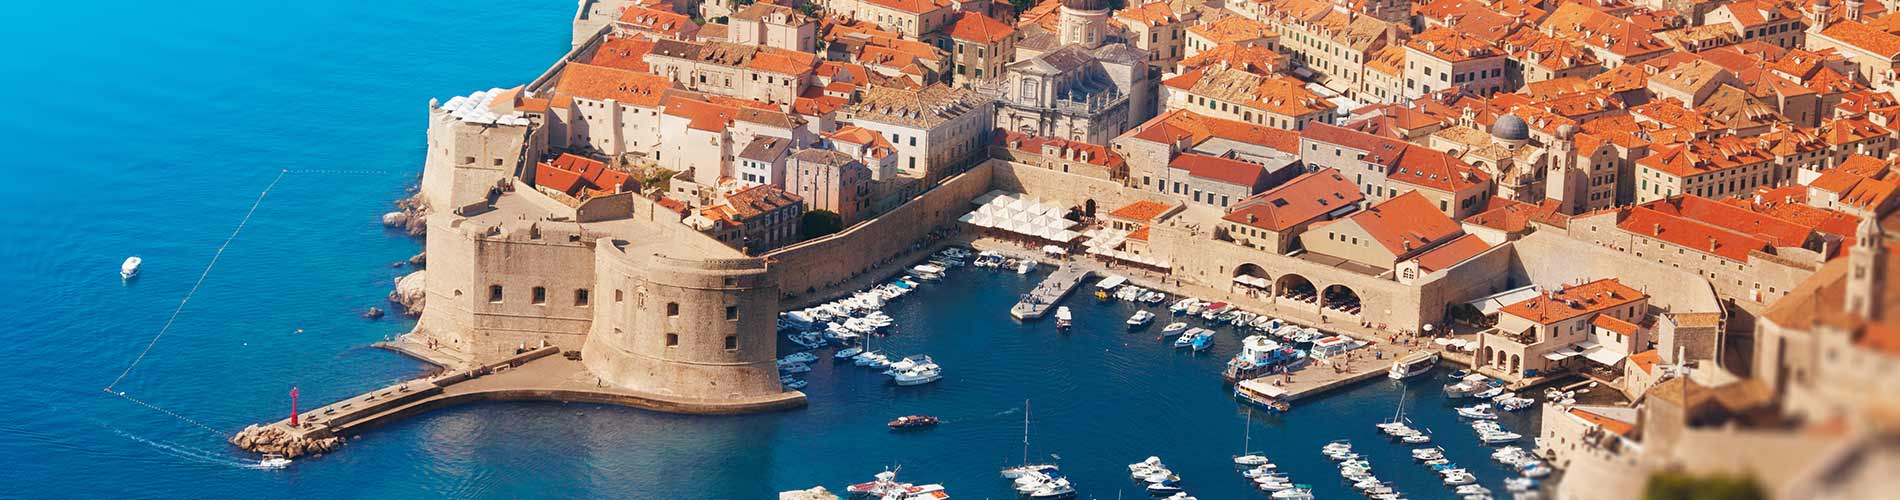 Dubrovnik old city Port.jpg